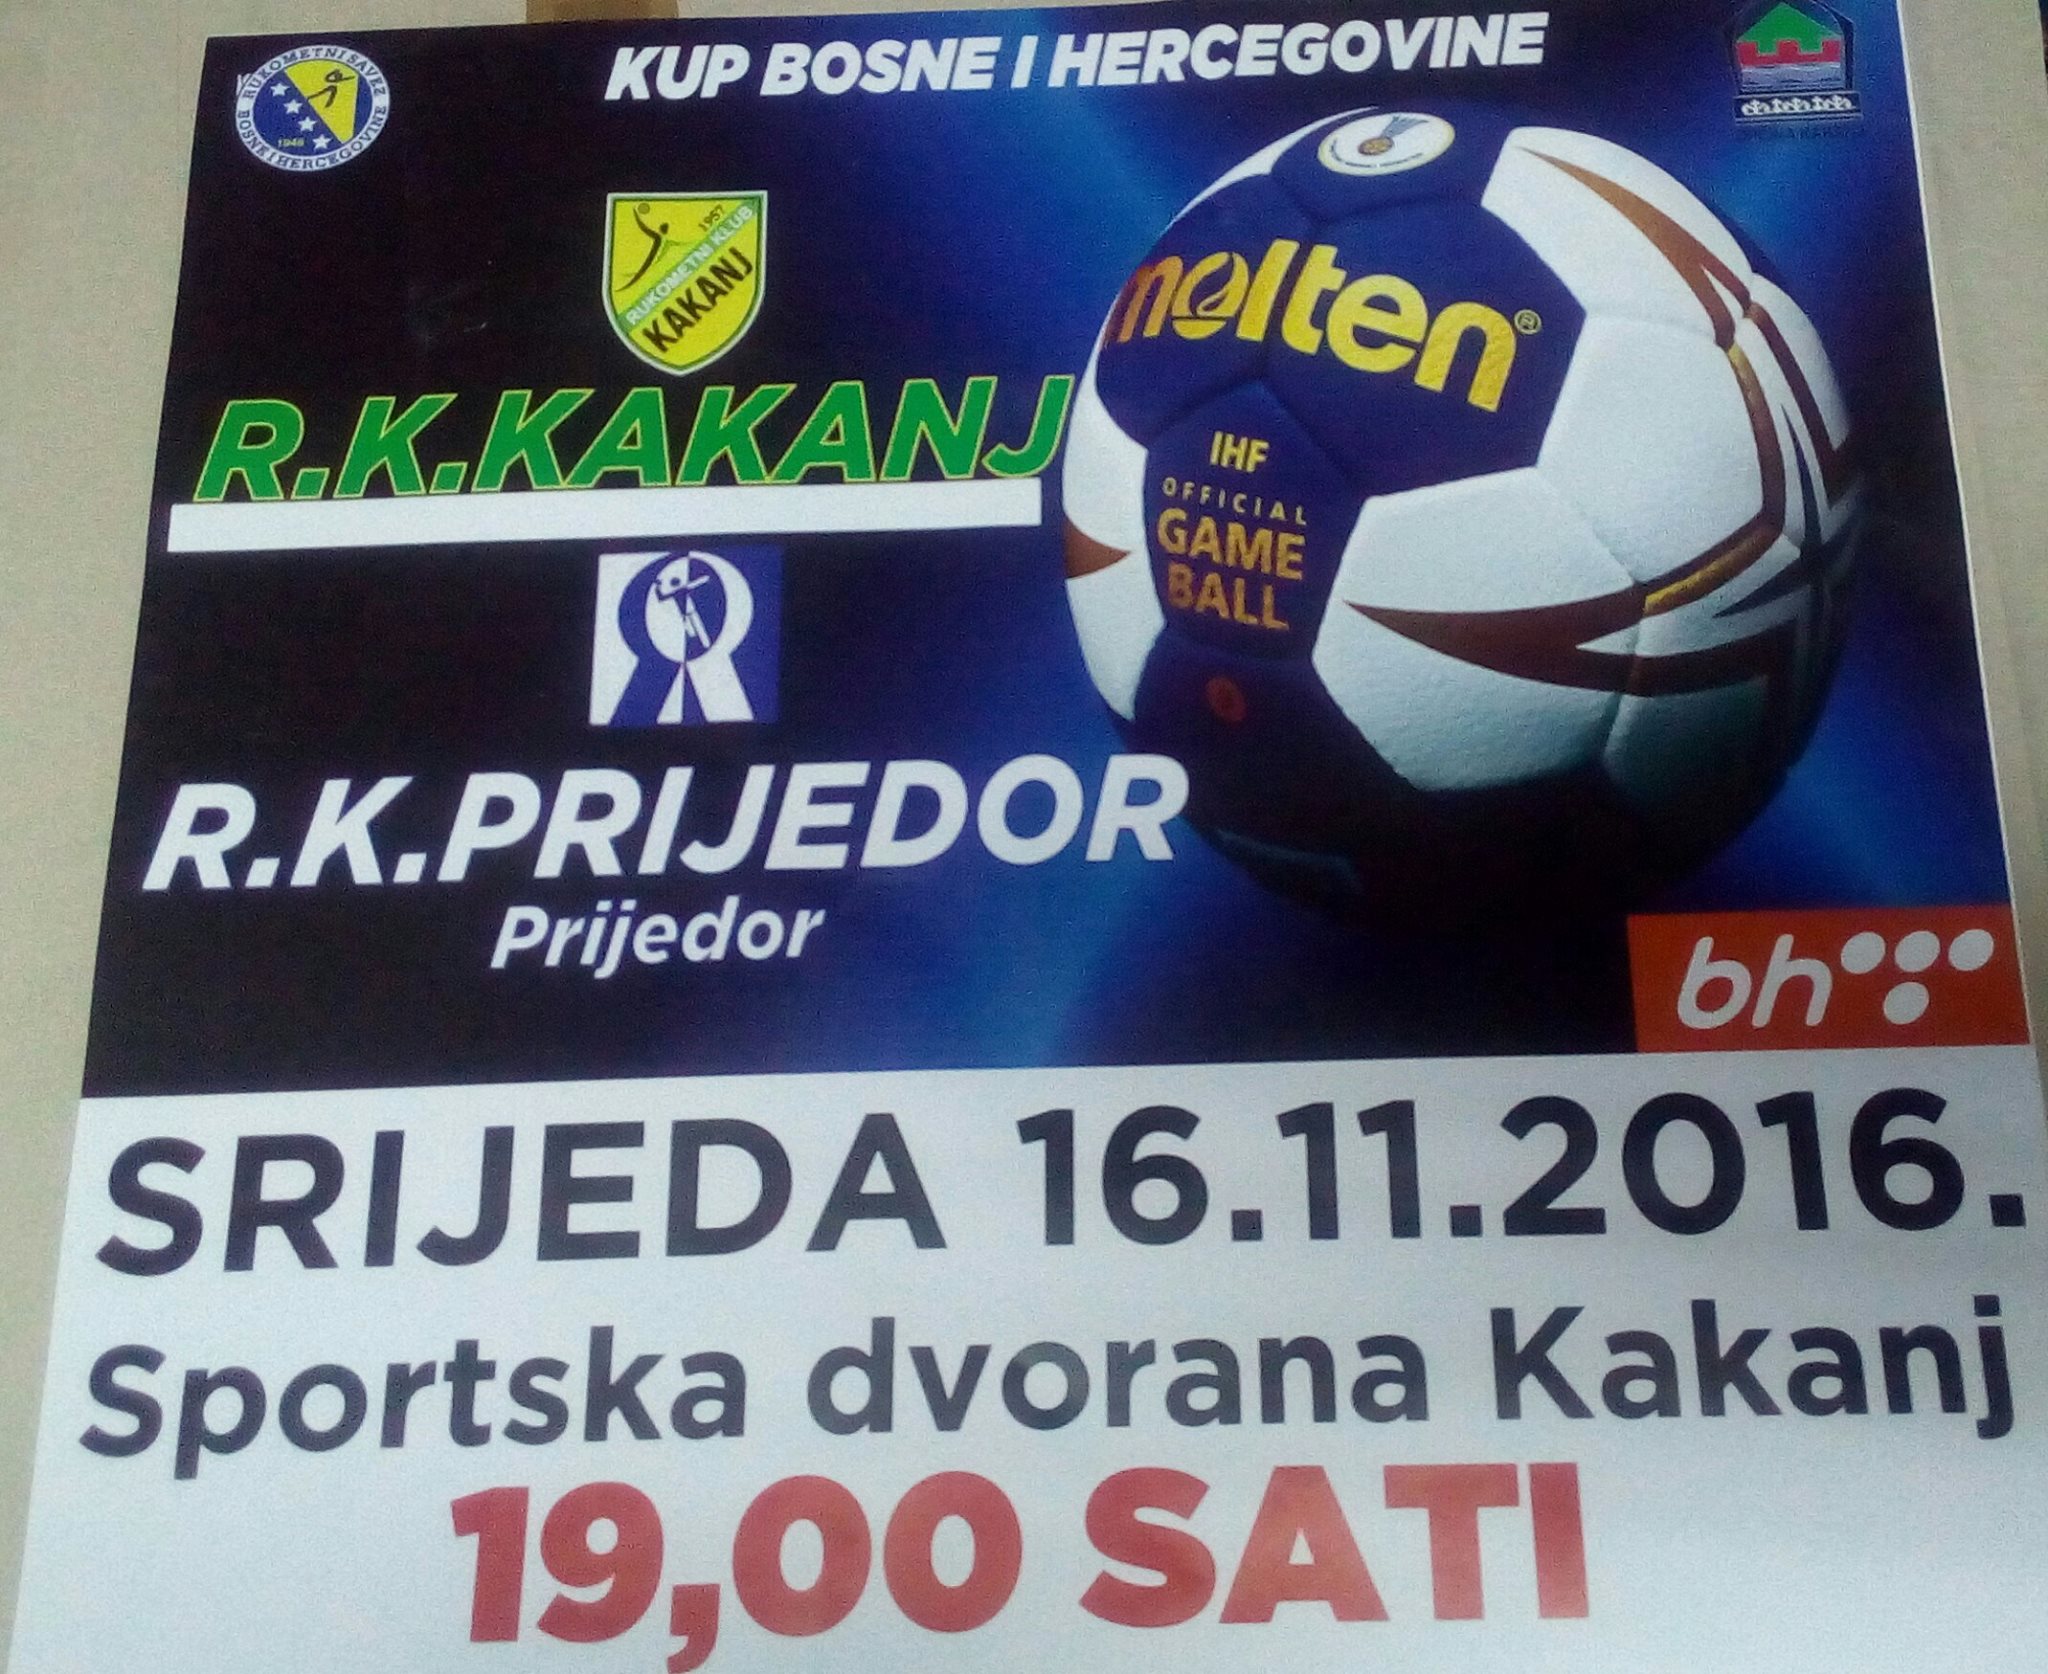 Večeras utakmica između RK “Kakanj” i RK “Prijedor” u Sportskoj dvorani KSC Kakanj